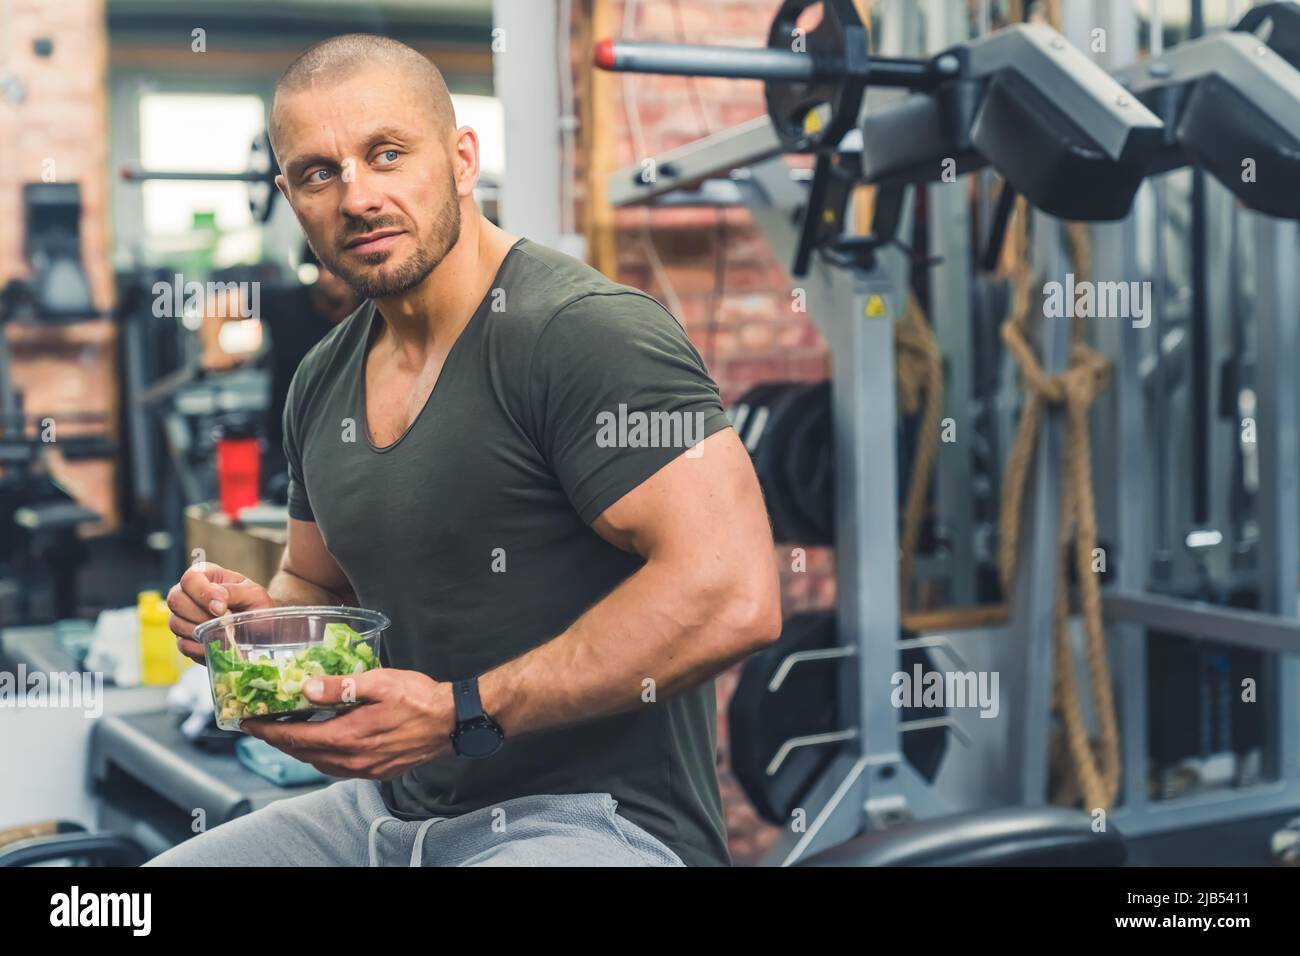 Die Bedeutung der Ernährung in den Fettabbau. Muskulöser kahlköpfiger bärtiger Mann, der einen gesunden Salat isst, während er auf einer Fitnessbank sitzt. Hochwertige Fotos Stockfoto